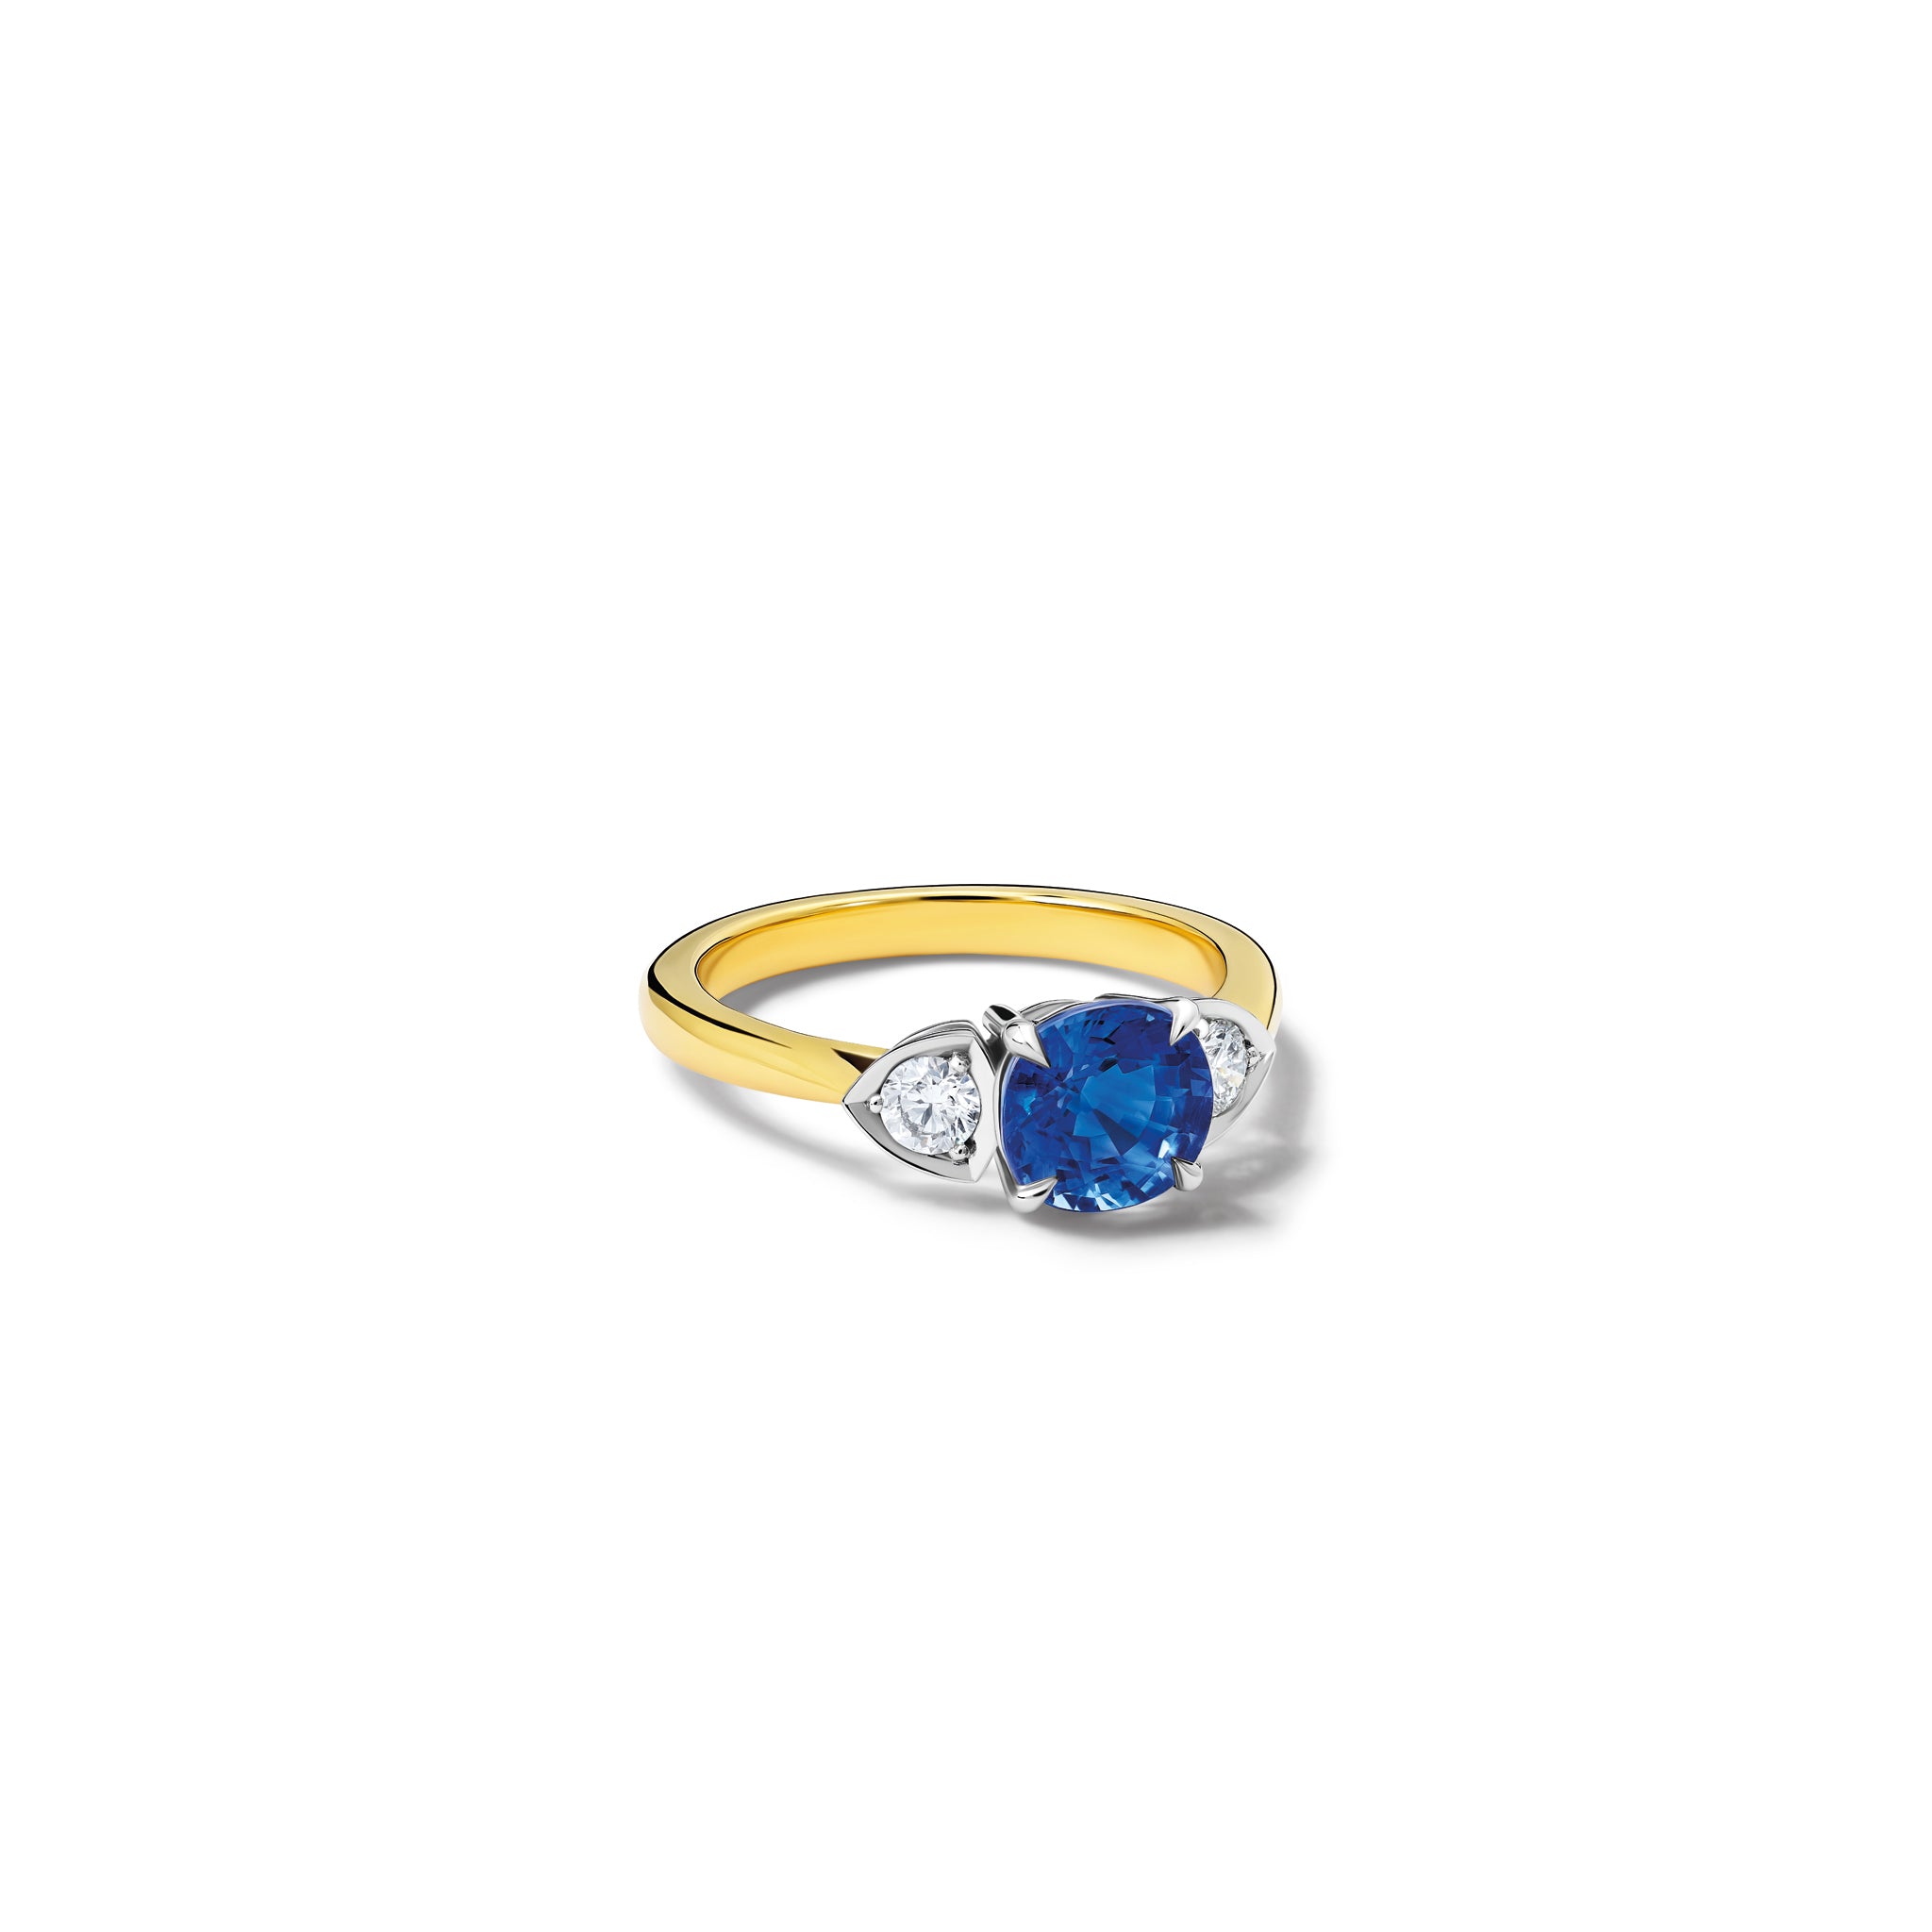 Katie Round Engagement Ring 18ct White & Yellow Gold - Sapphire & Diamond